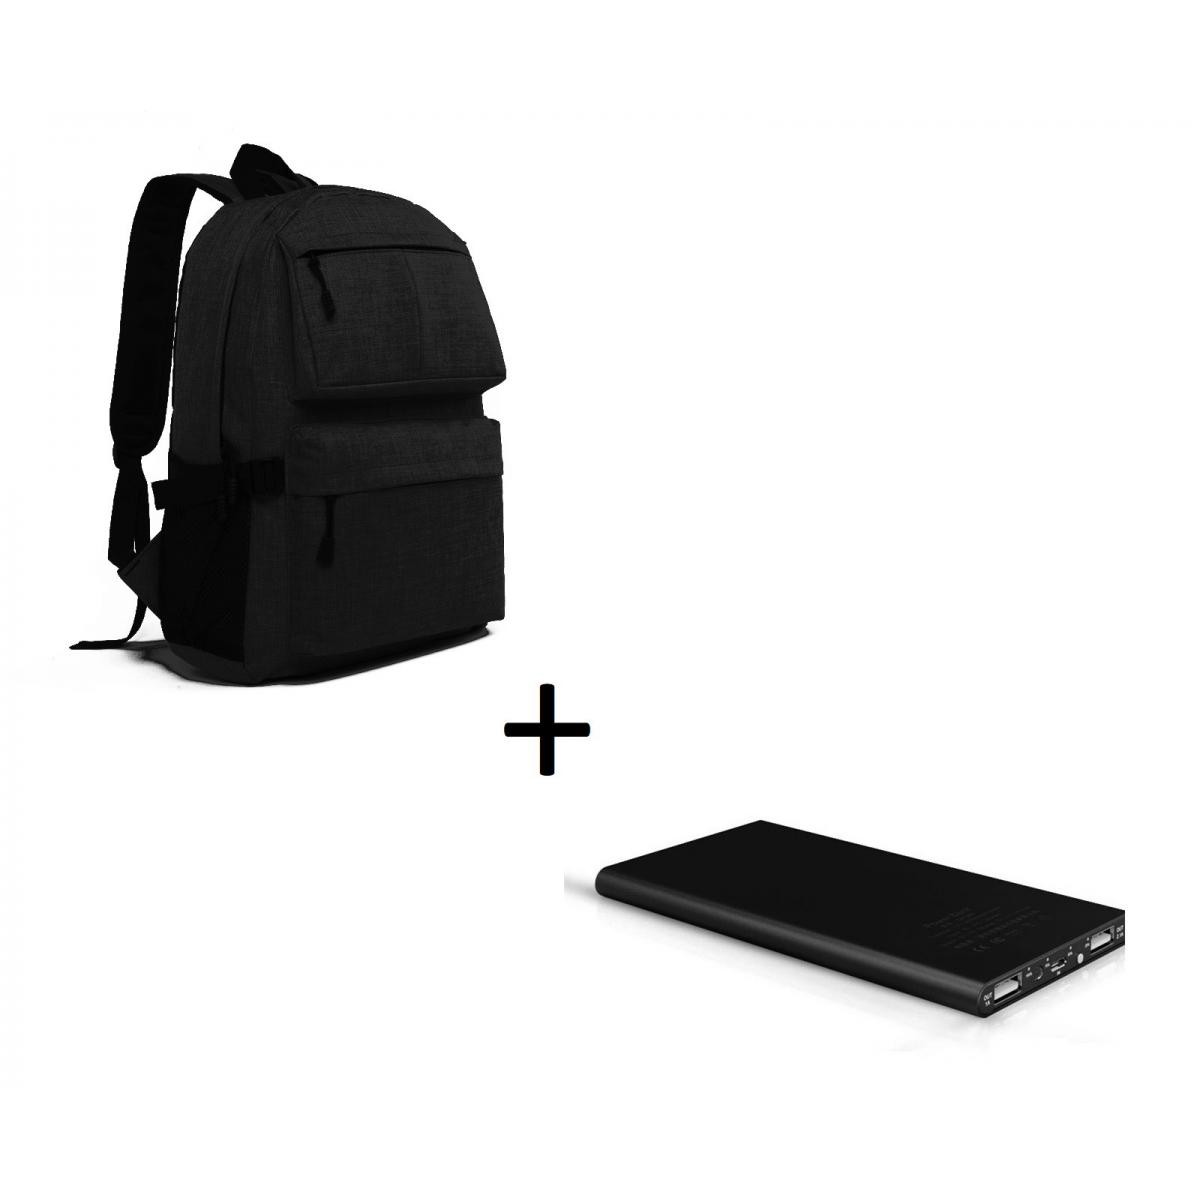 Shot - Pack pour HUAWEI Y5 2019 Smartphone (Batterie Plate 6000 mAh 2 ports + Sac à dos avec prise USB integre) (NOIR) - Chargeur secteur téléphone